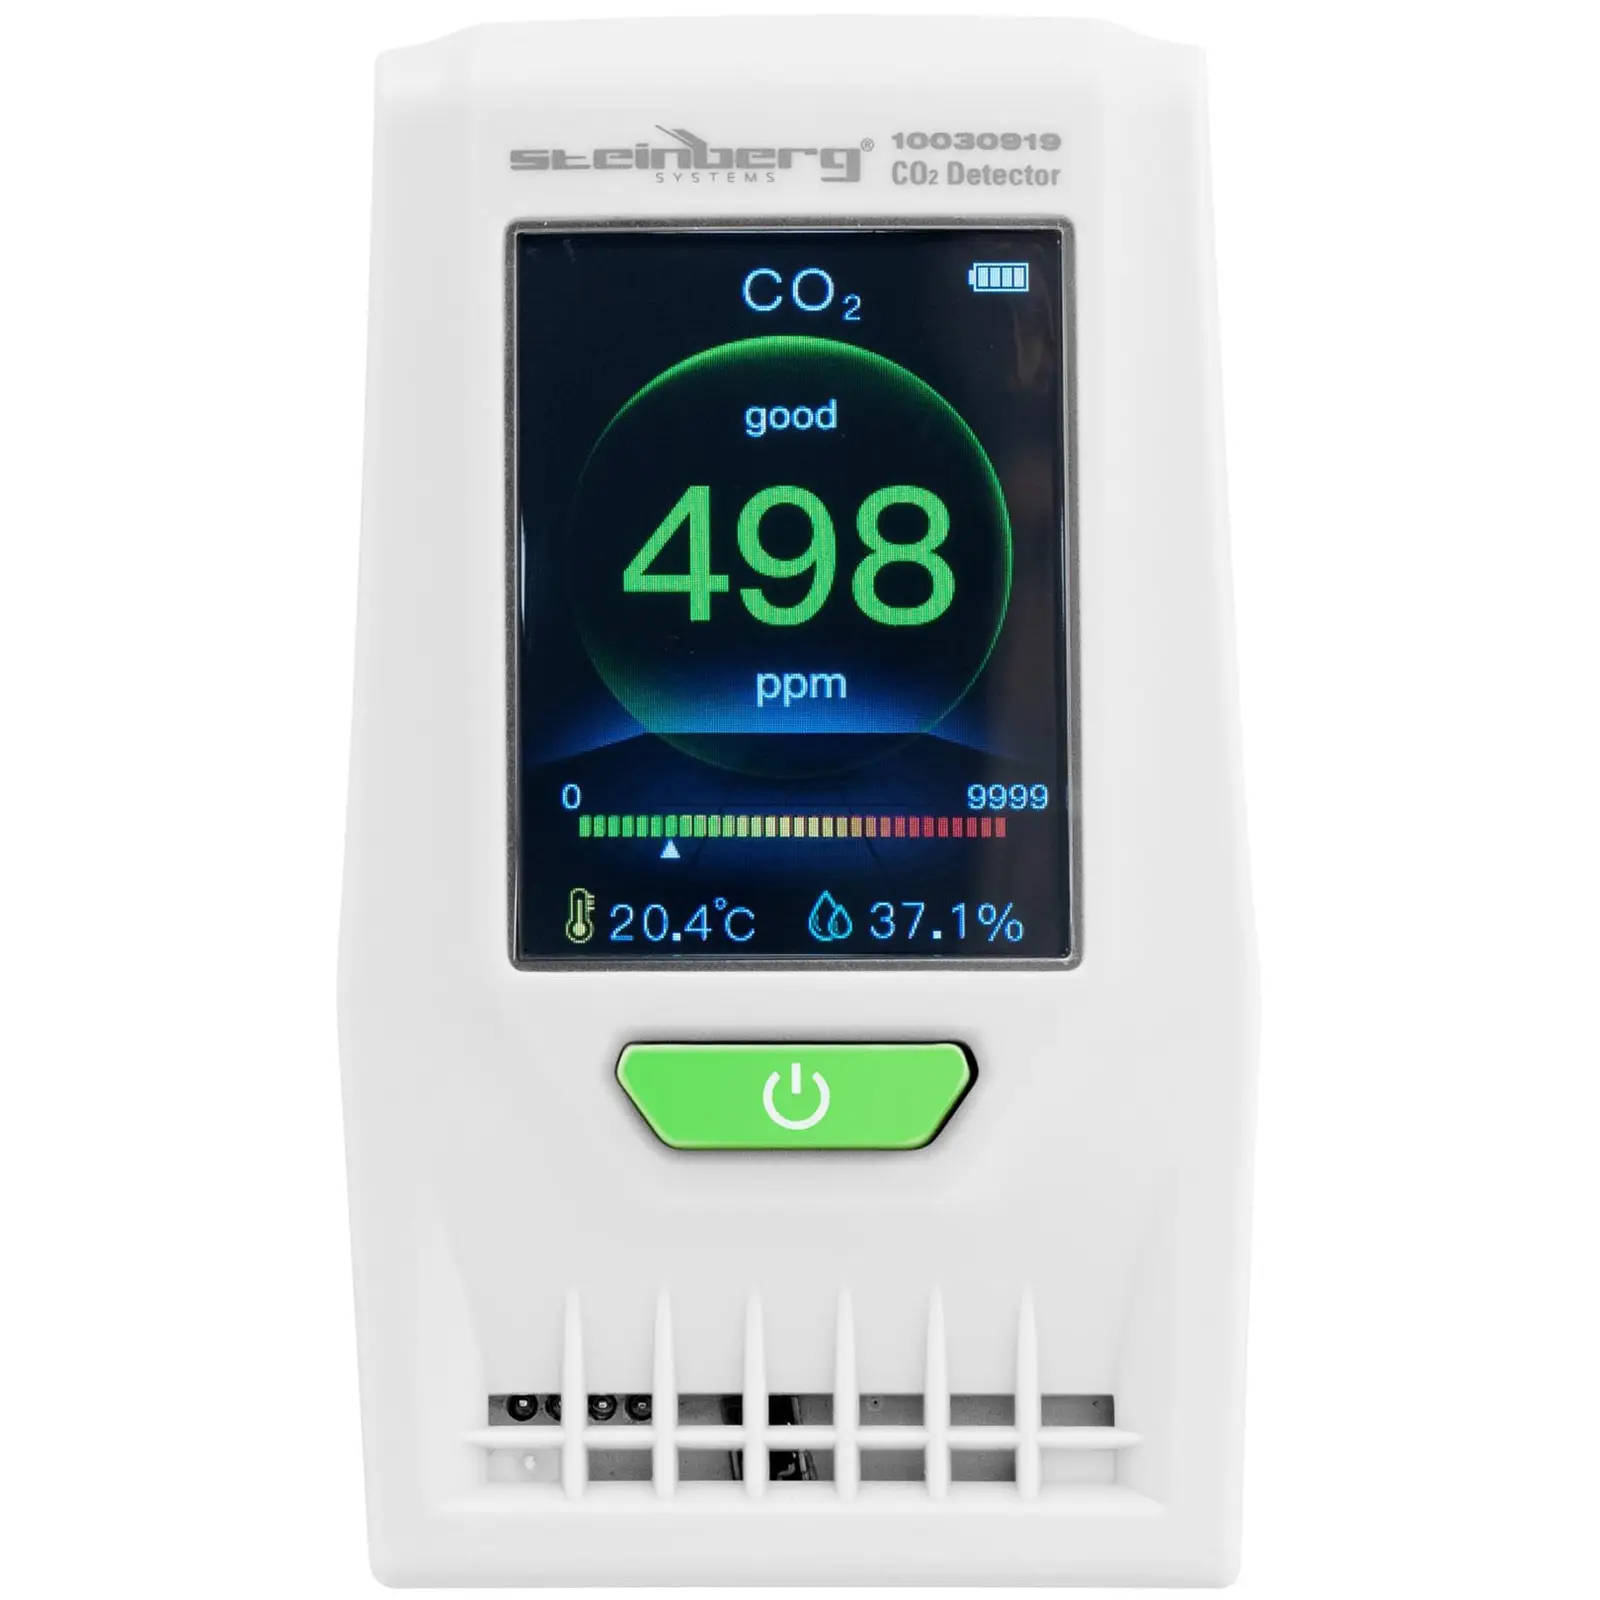 Koldioxidmätare – Inkl. temperatur, luftfuktighet, datum och tid